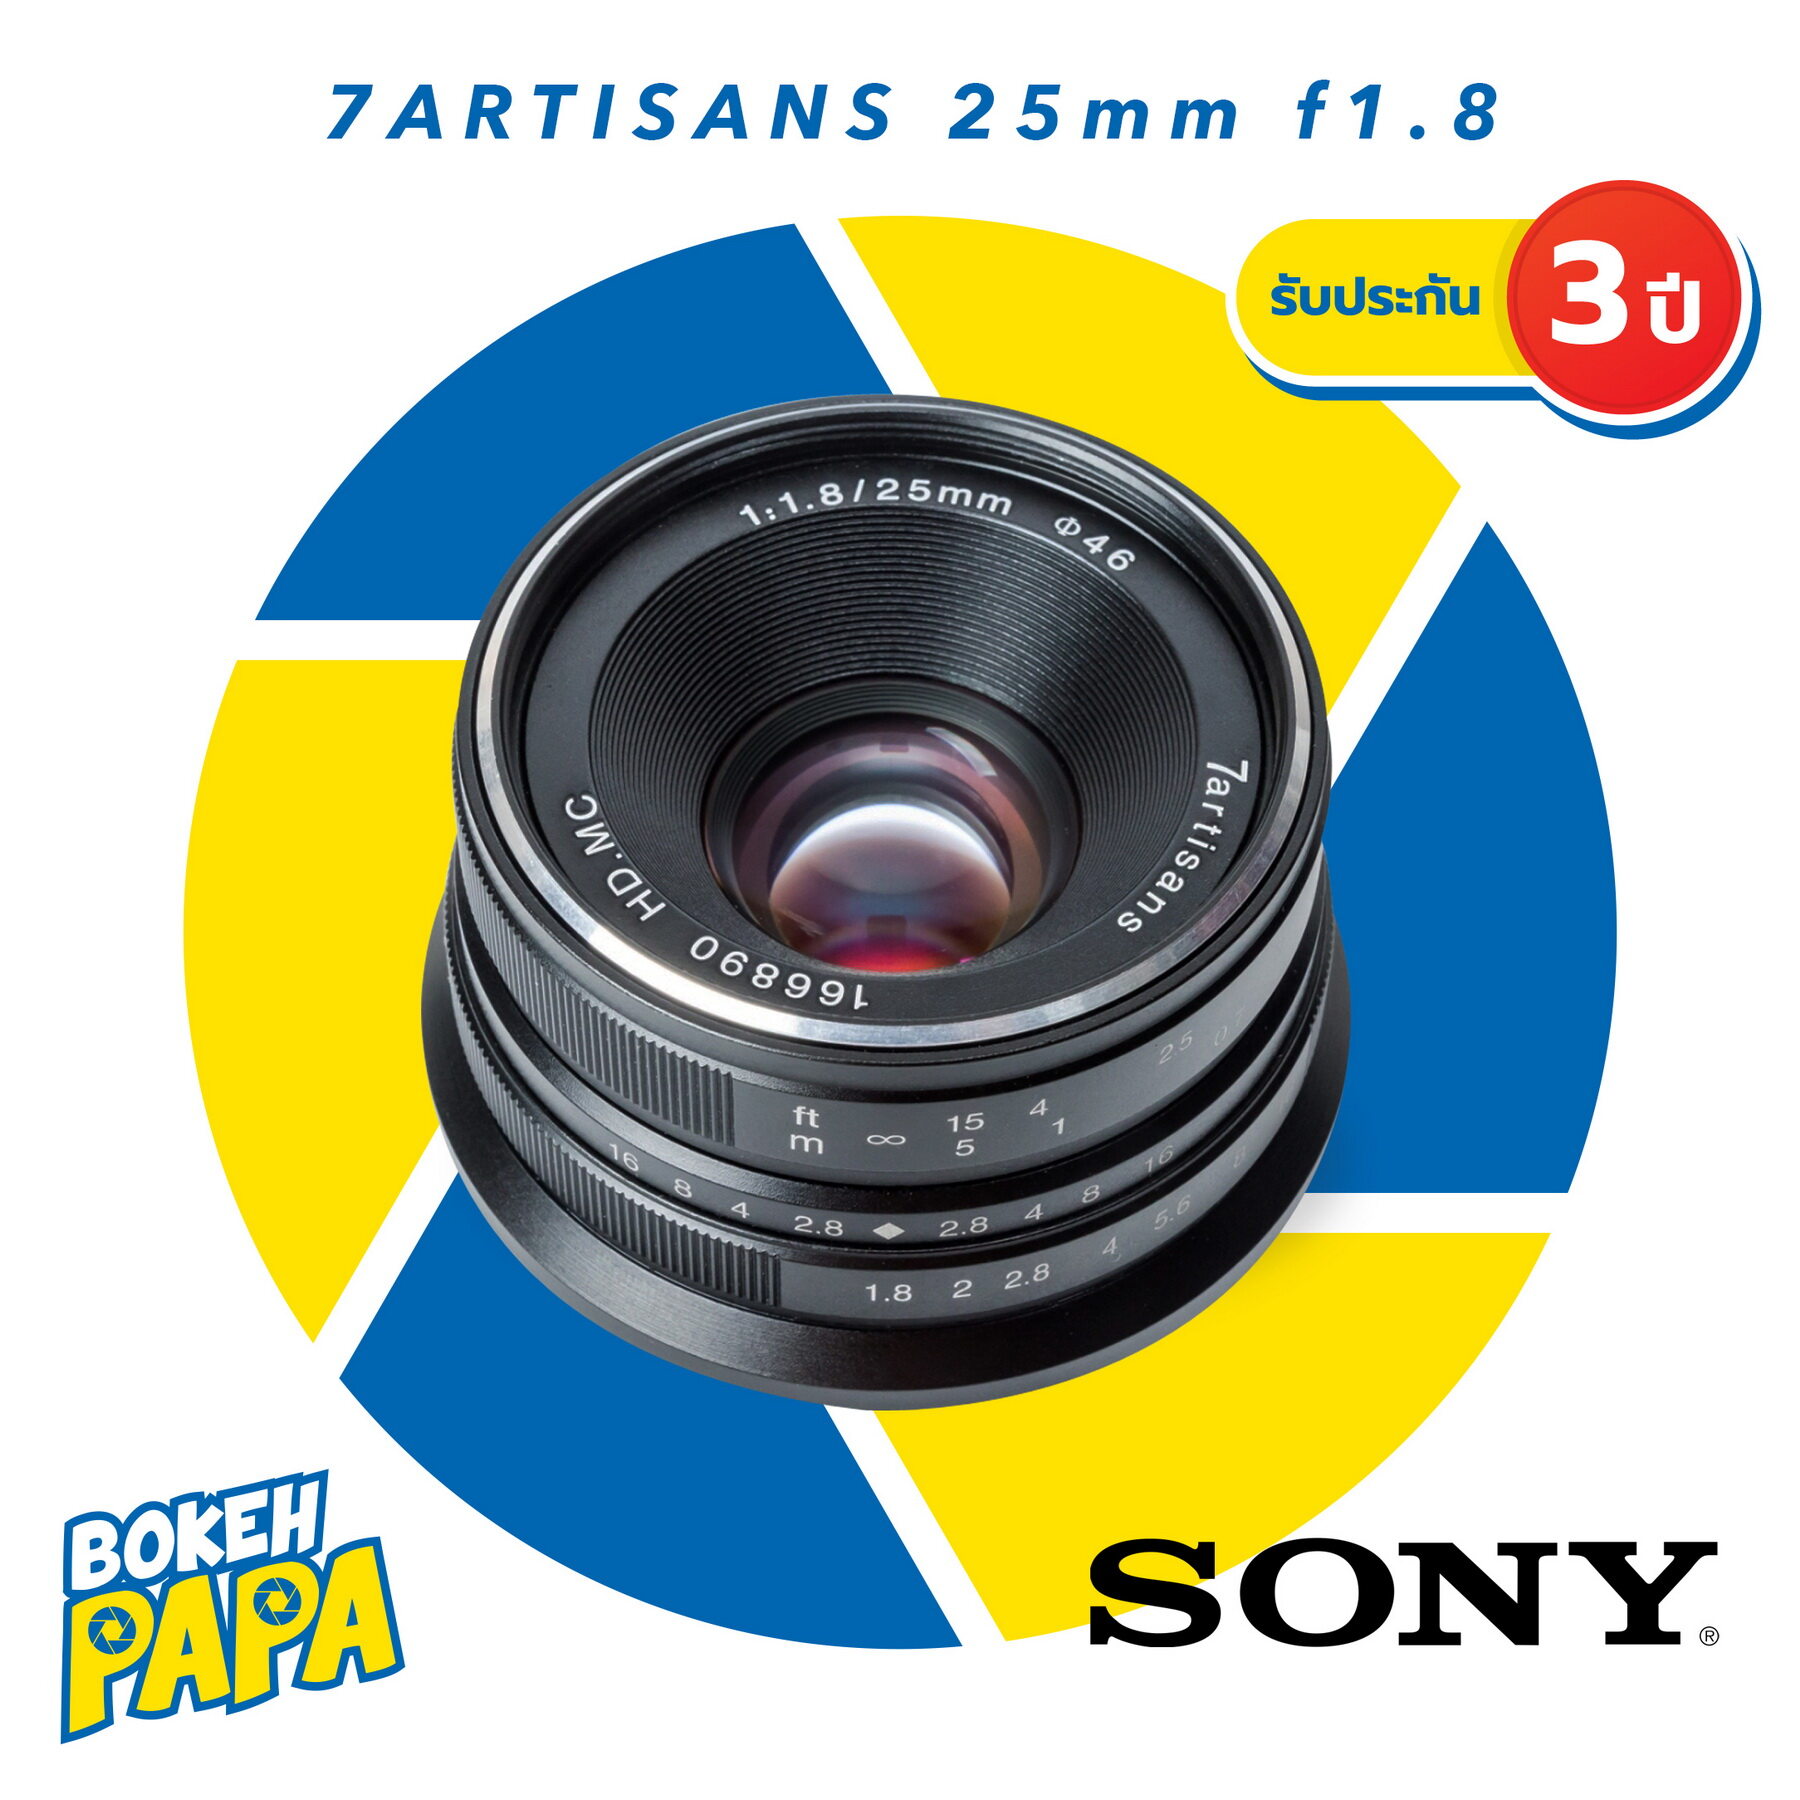 7Artisans 25mm F1.8 เลนส์มือหมุน สำหรับใส่กล้อง Sony Mirrorless ได้ทุกรุ่น